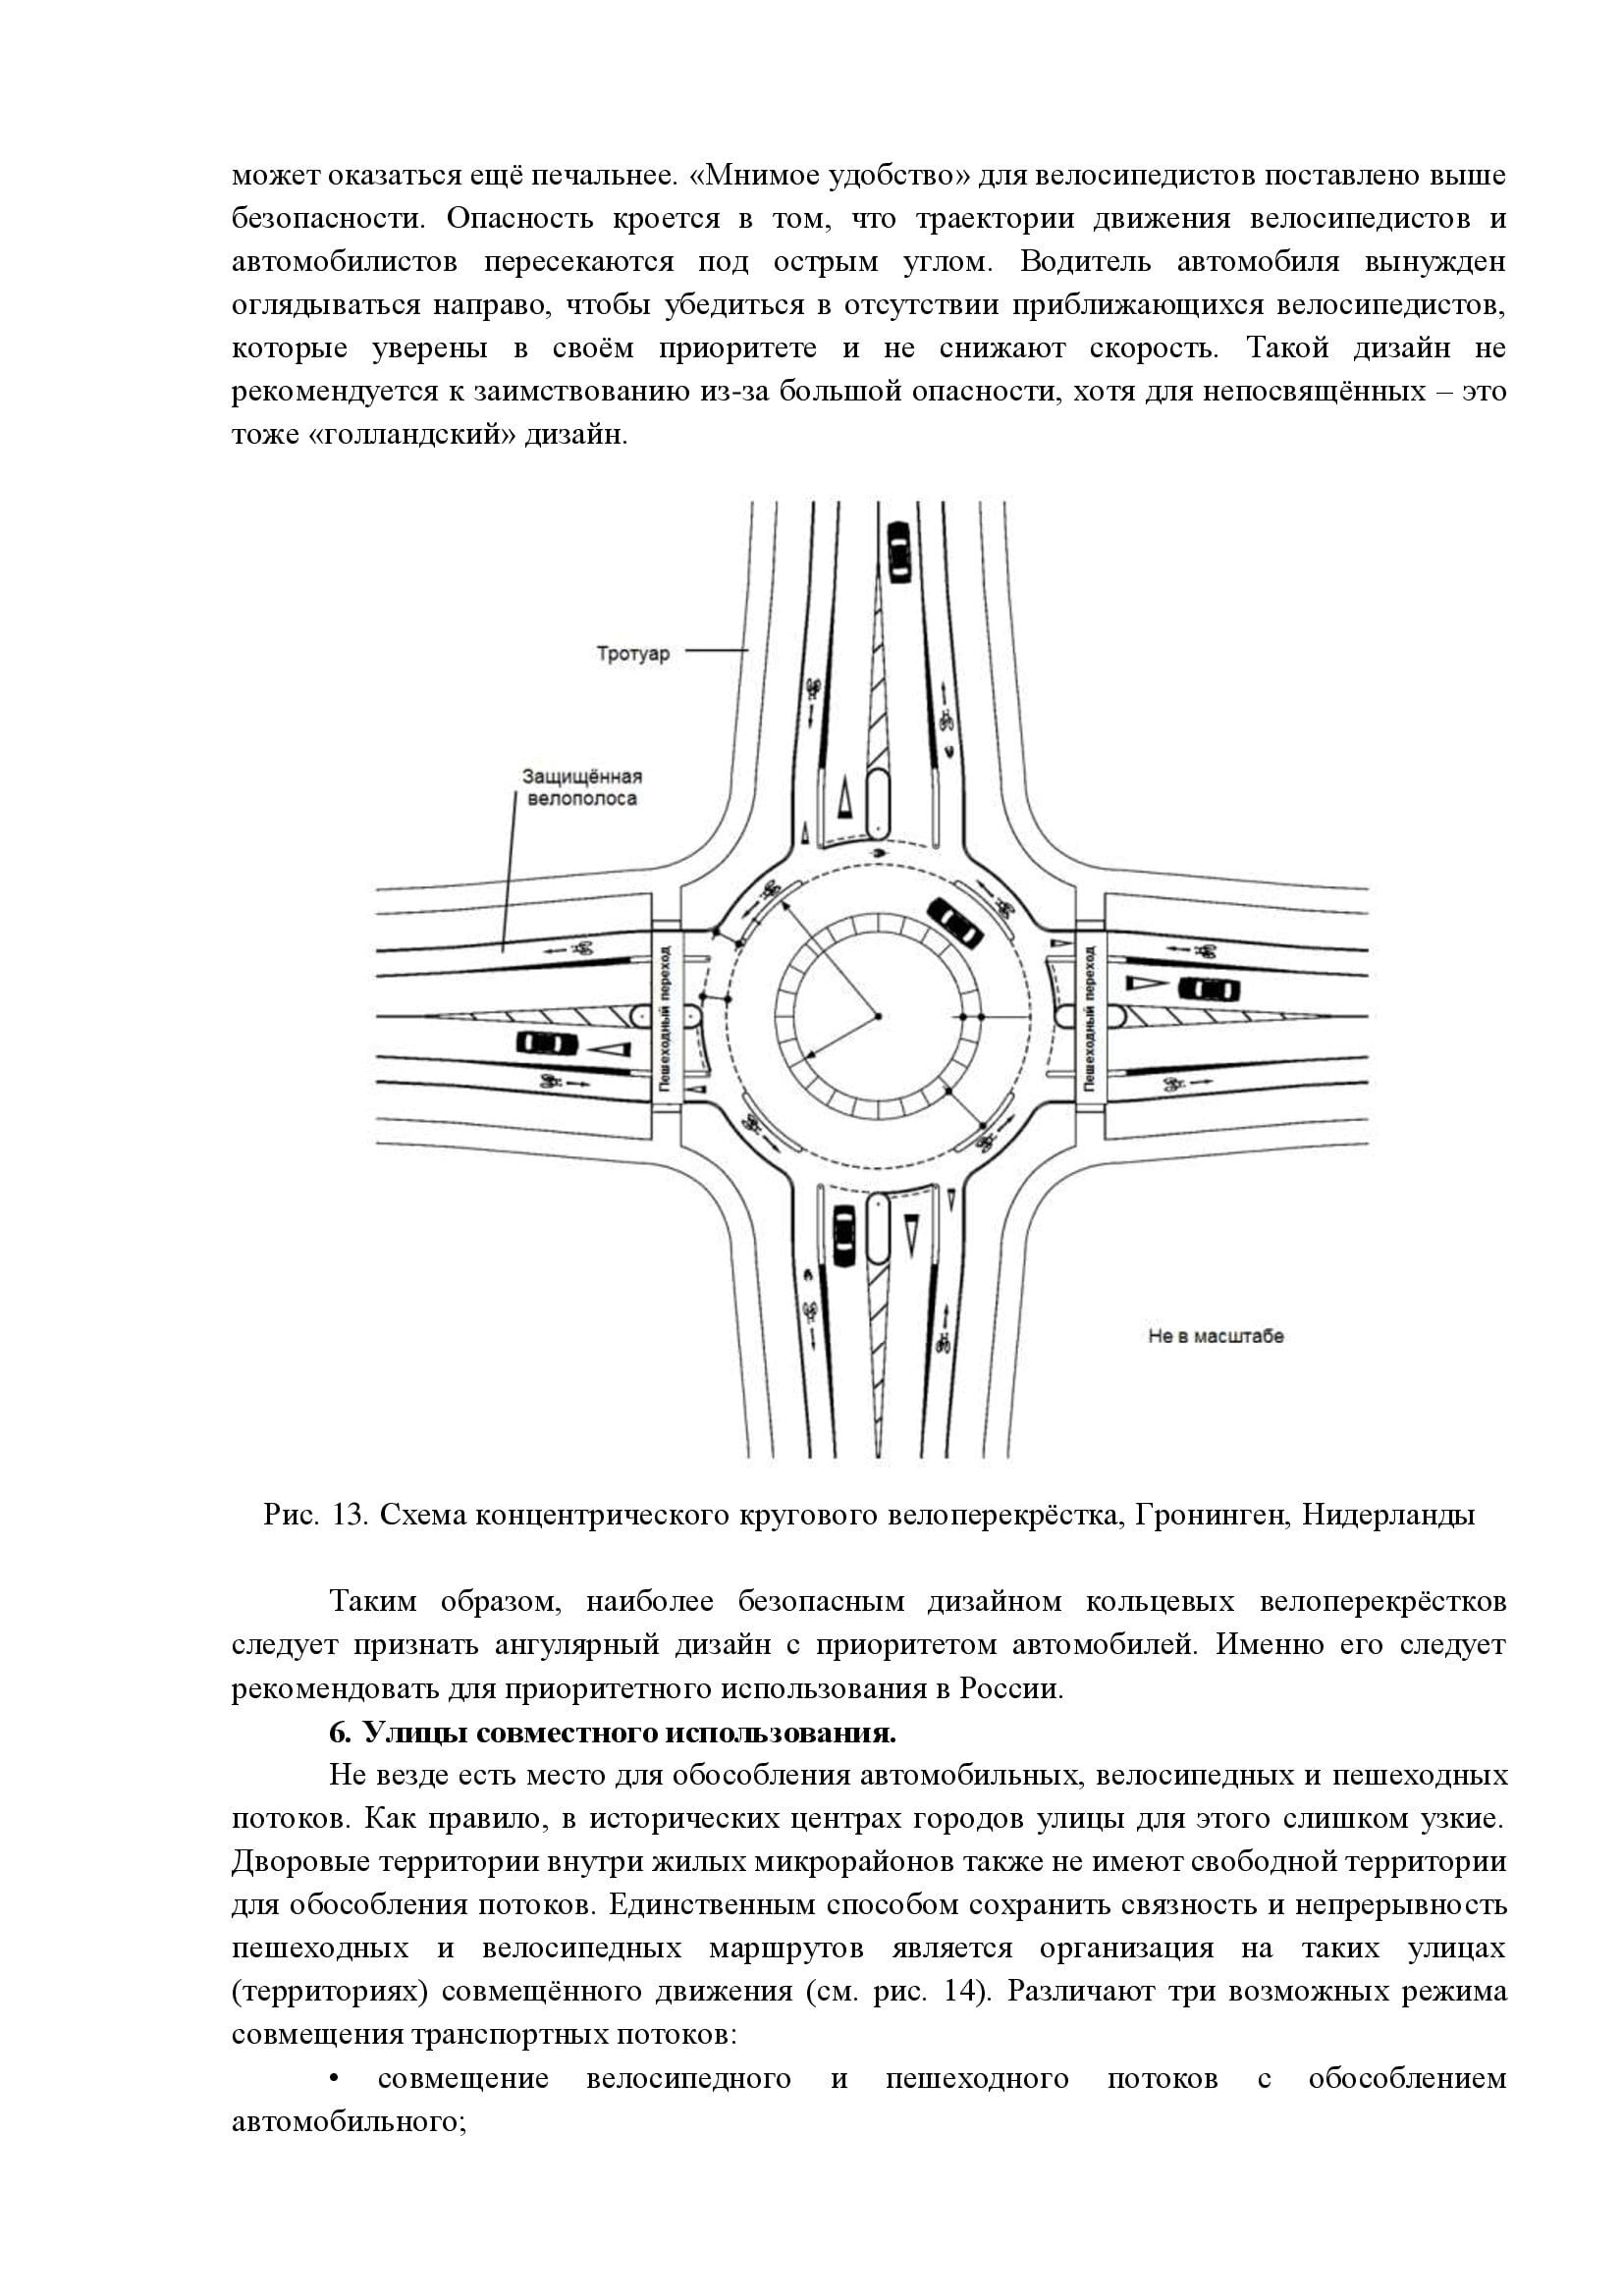 Дизайн элементов инфраструктуры для немоторизованной мобильности - фото 16